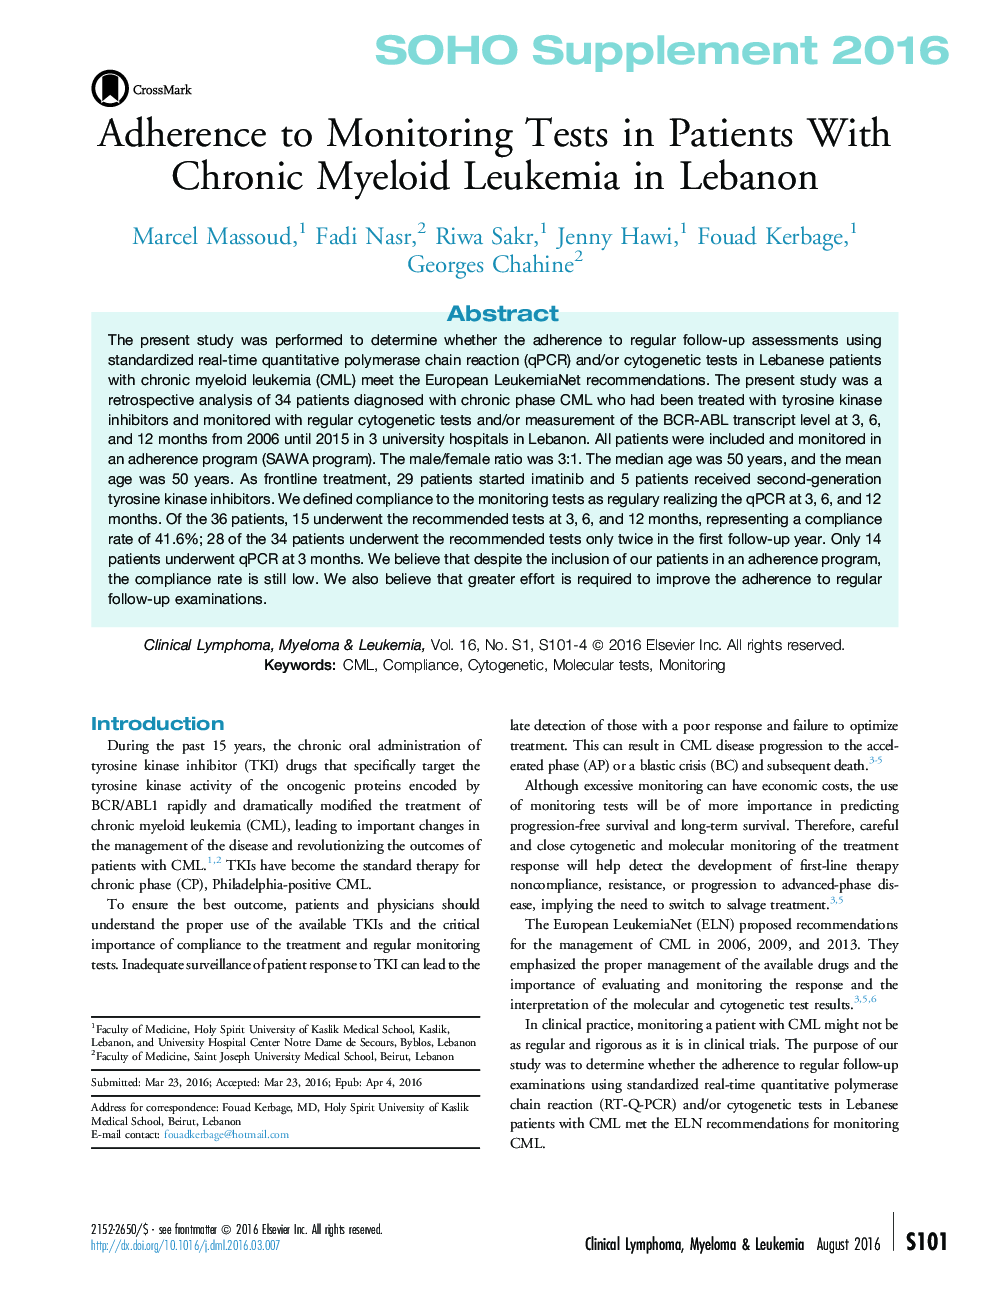 پیوستن به آزمایش های نظارت در بیماران مبتلا به لوسمی مزمن میلوئیدی در لبنان